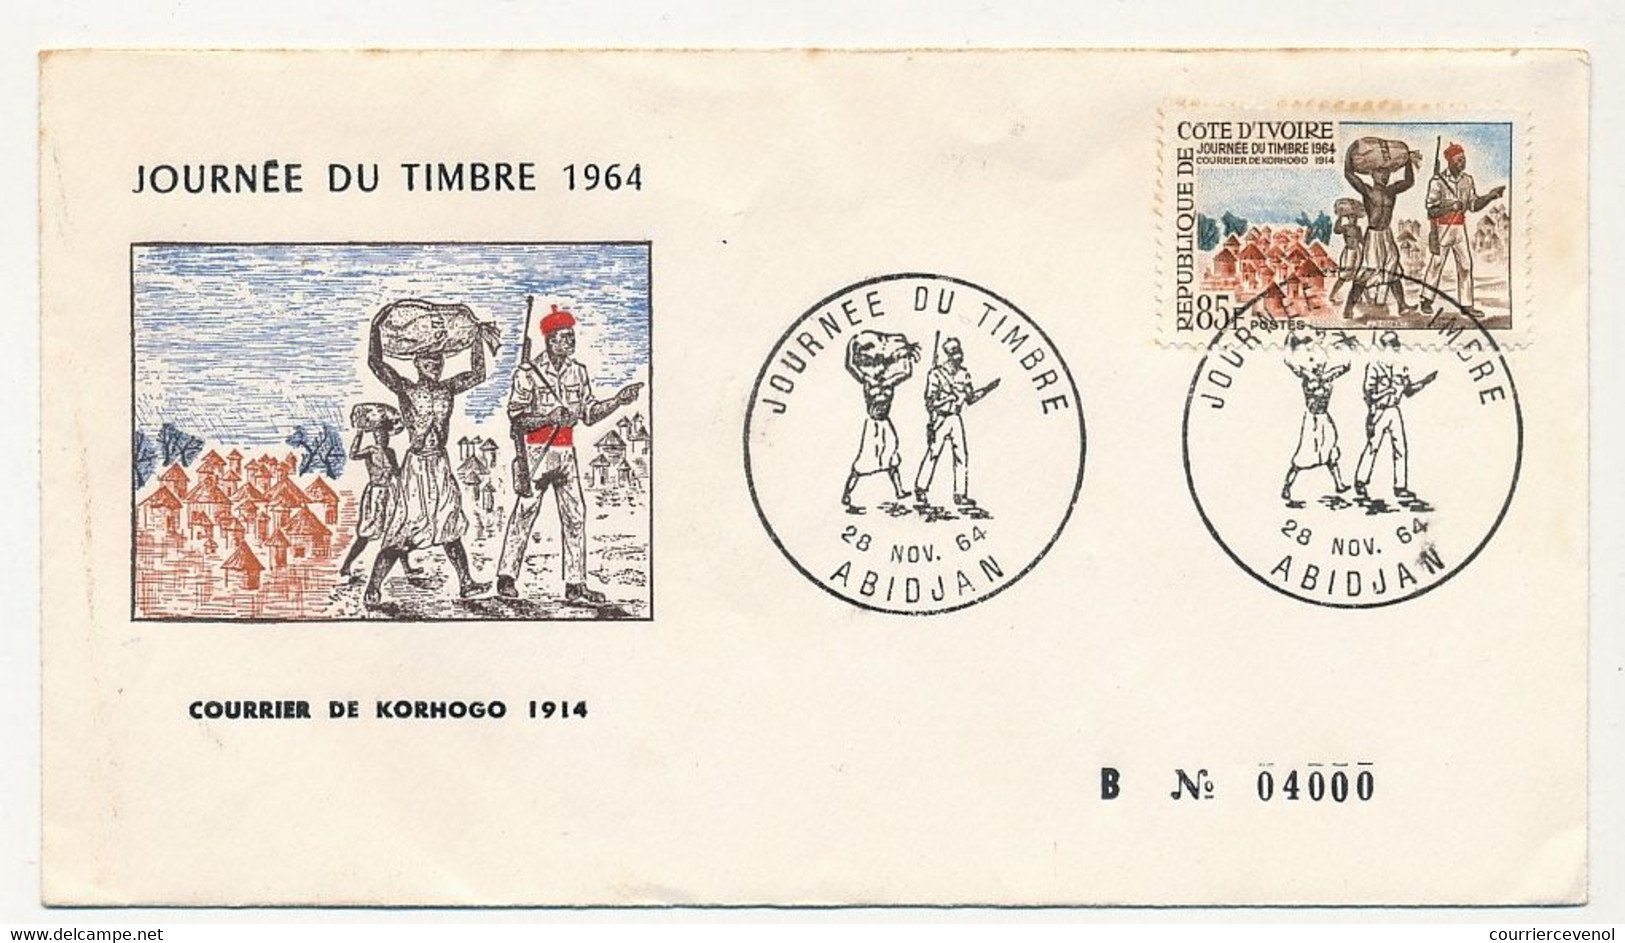 CÔTE D'IVOIRE - Env FDC - 85F Journée Du Timbre - Courrier De Kornogo 1914 - 28 Nov 1964 - Abidjan - Costa De Marfil (1960-...)